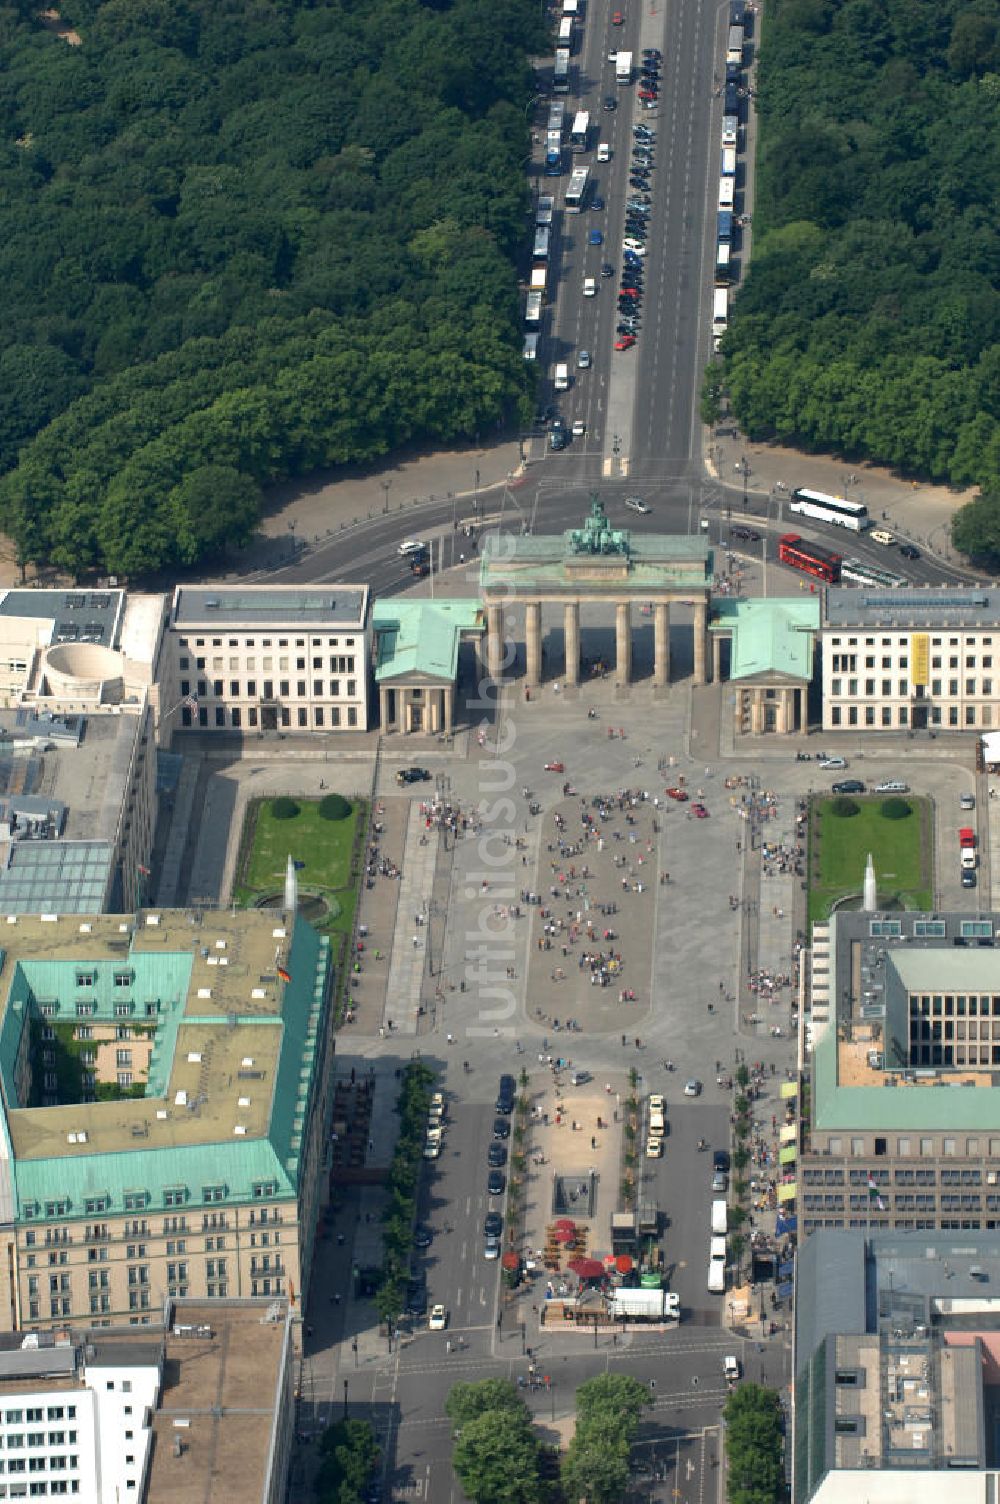 Berlin von oben - Pariser Platz am Brandenburger Tor in Berlin